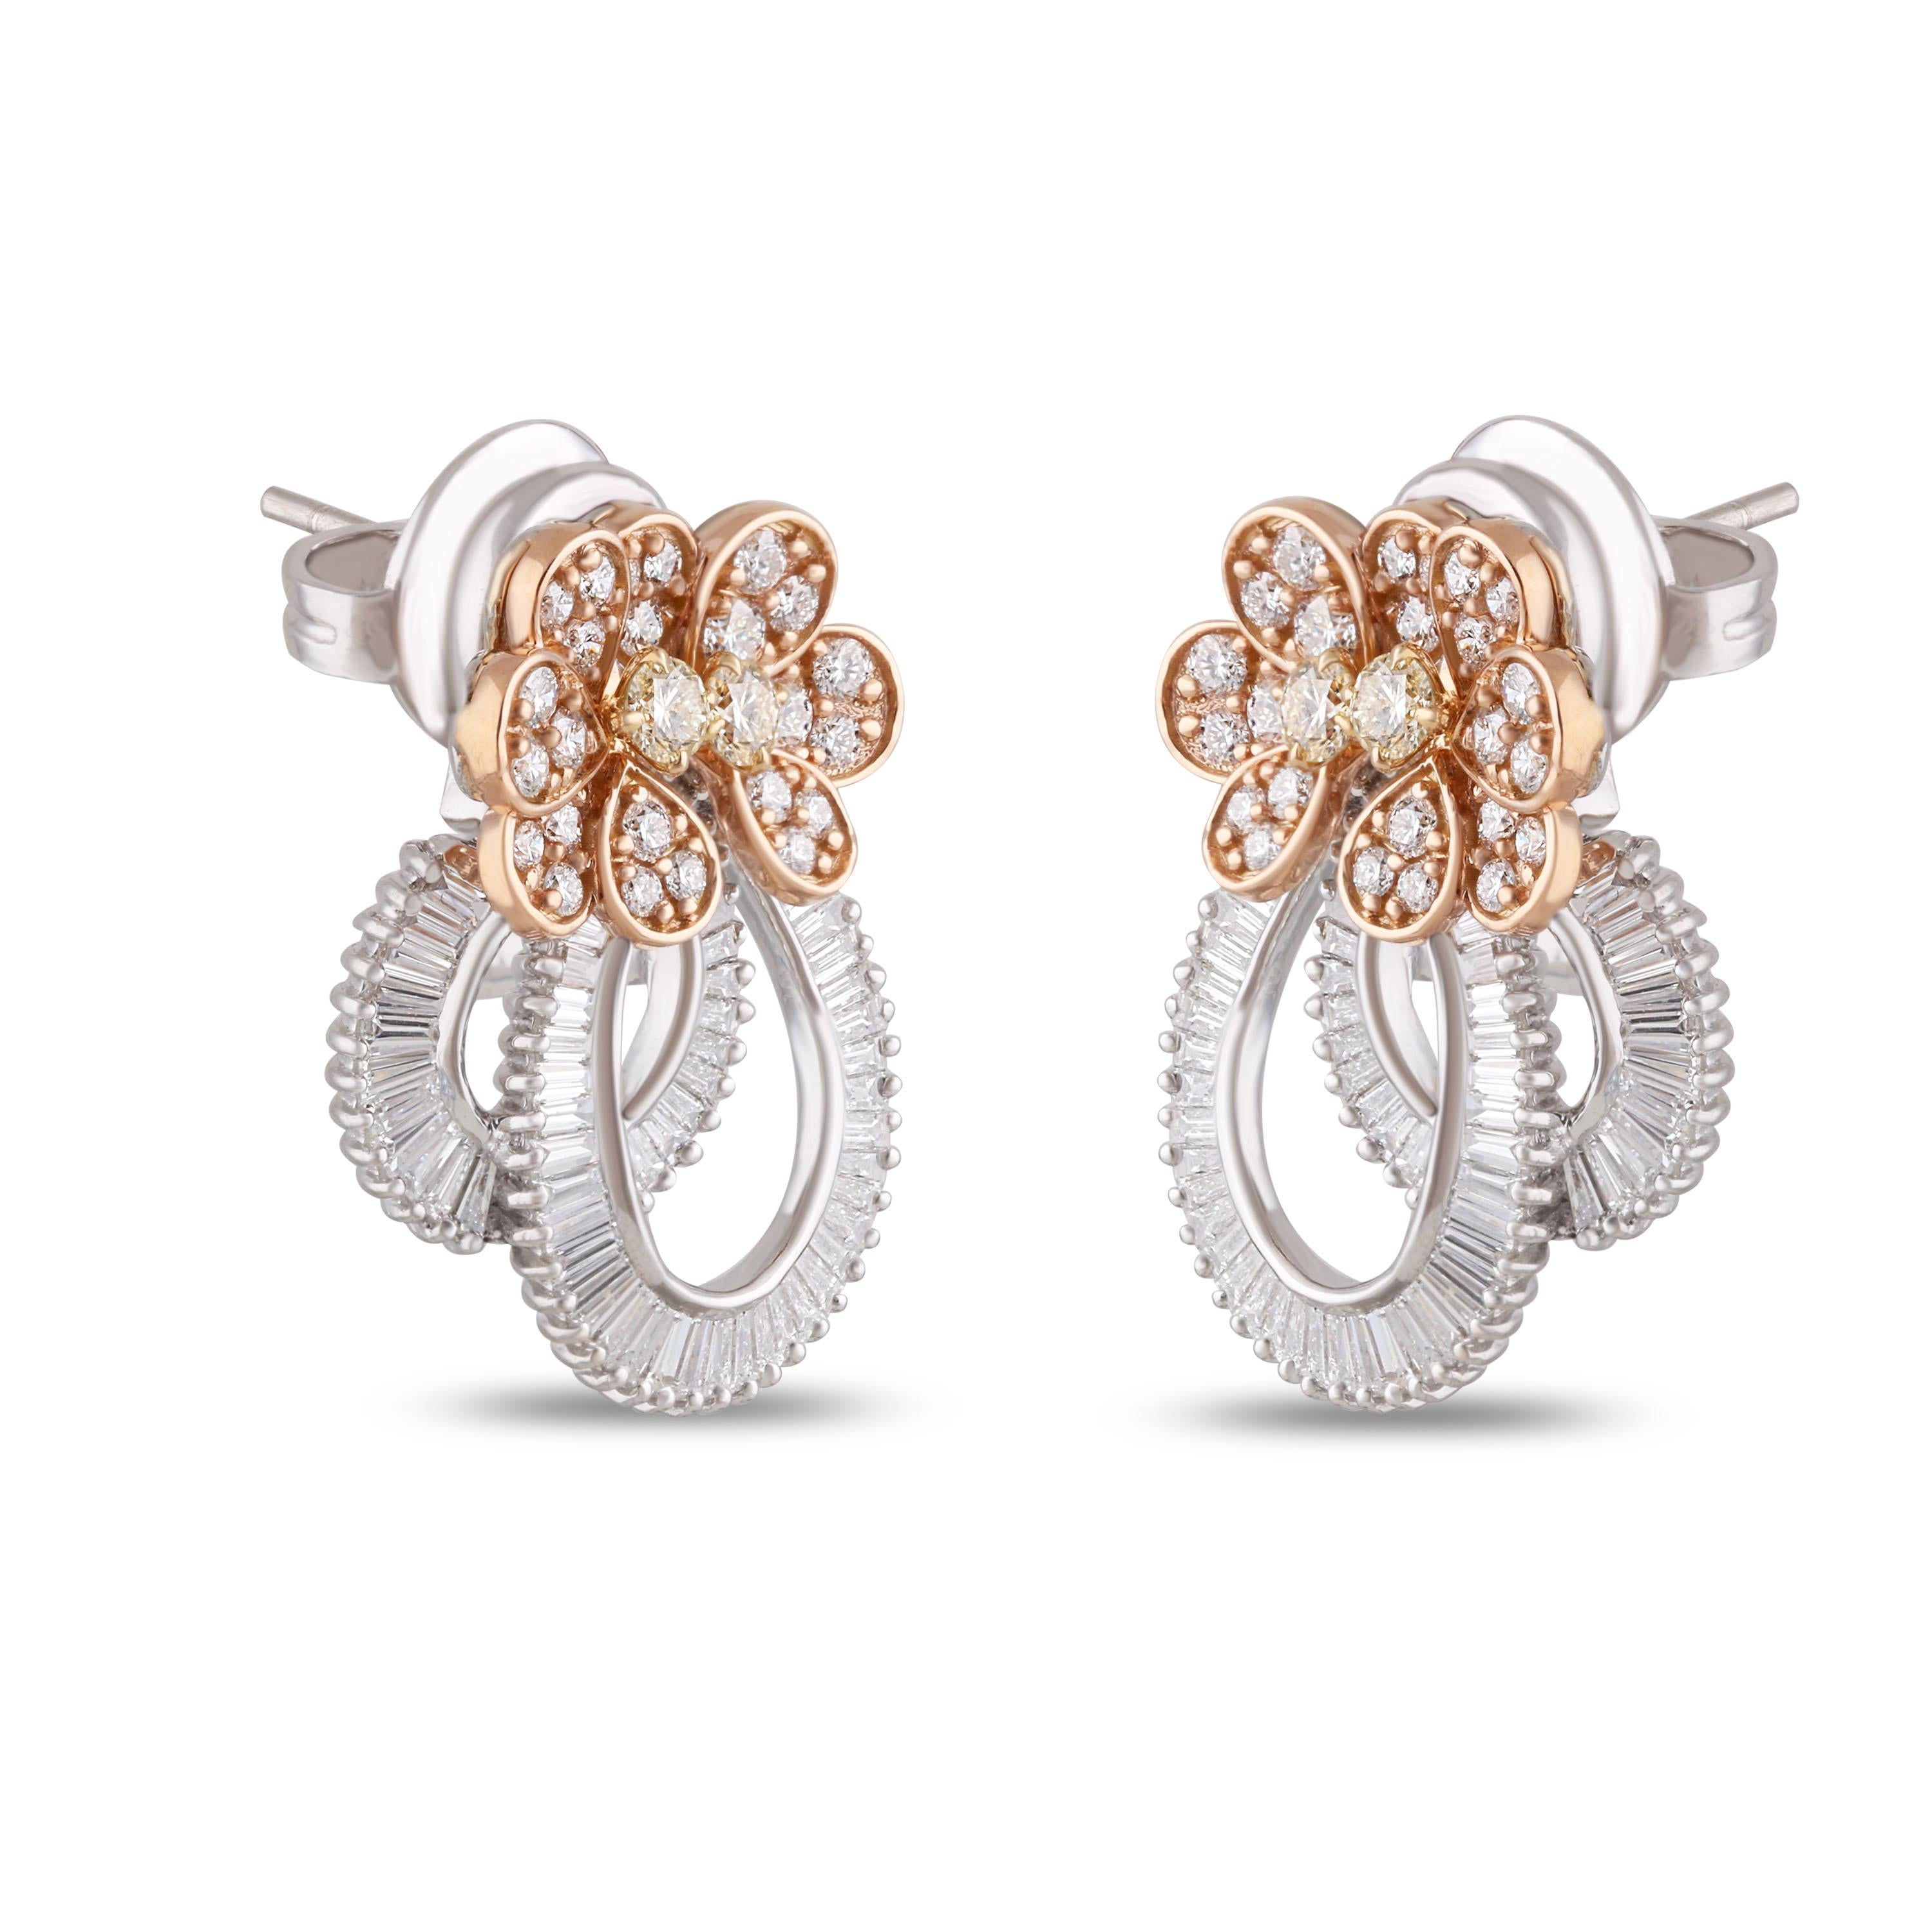 Studio Rêves Ribbon Baguette and Orange Diamond Stud Earrings in 18 Karat Gold 1